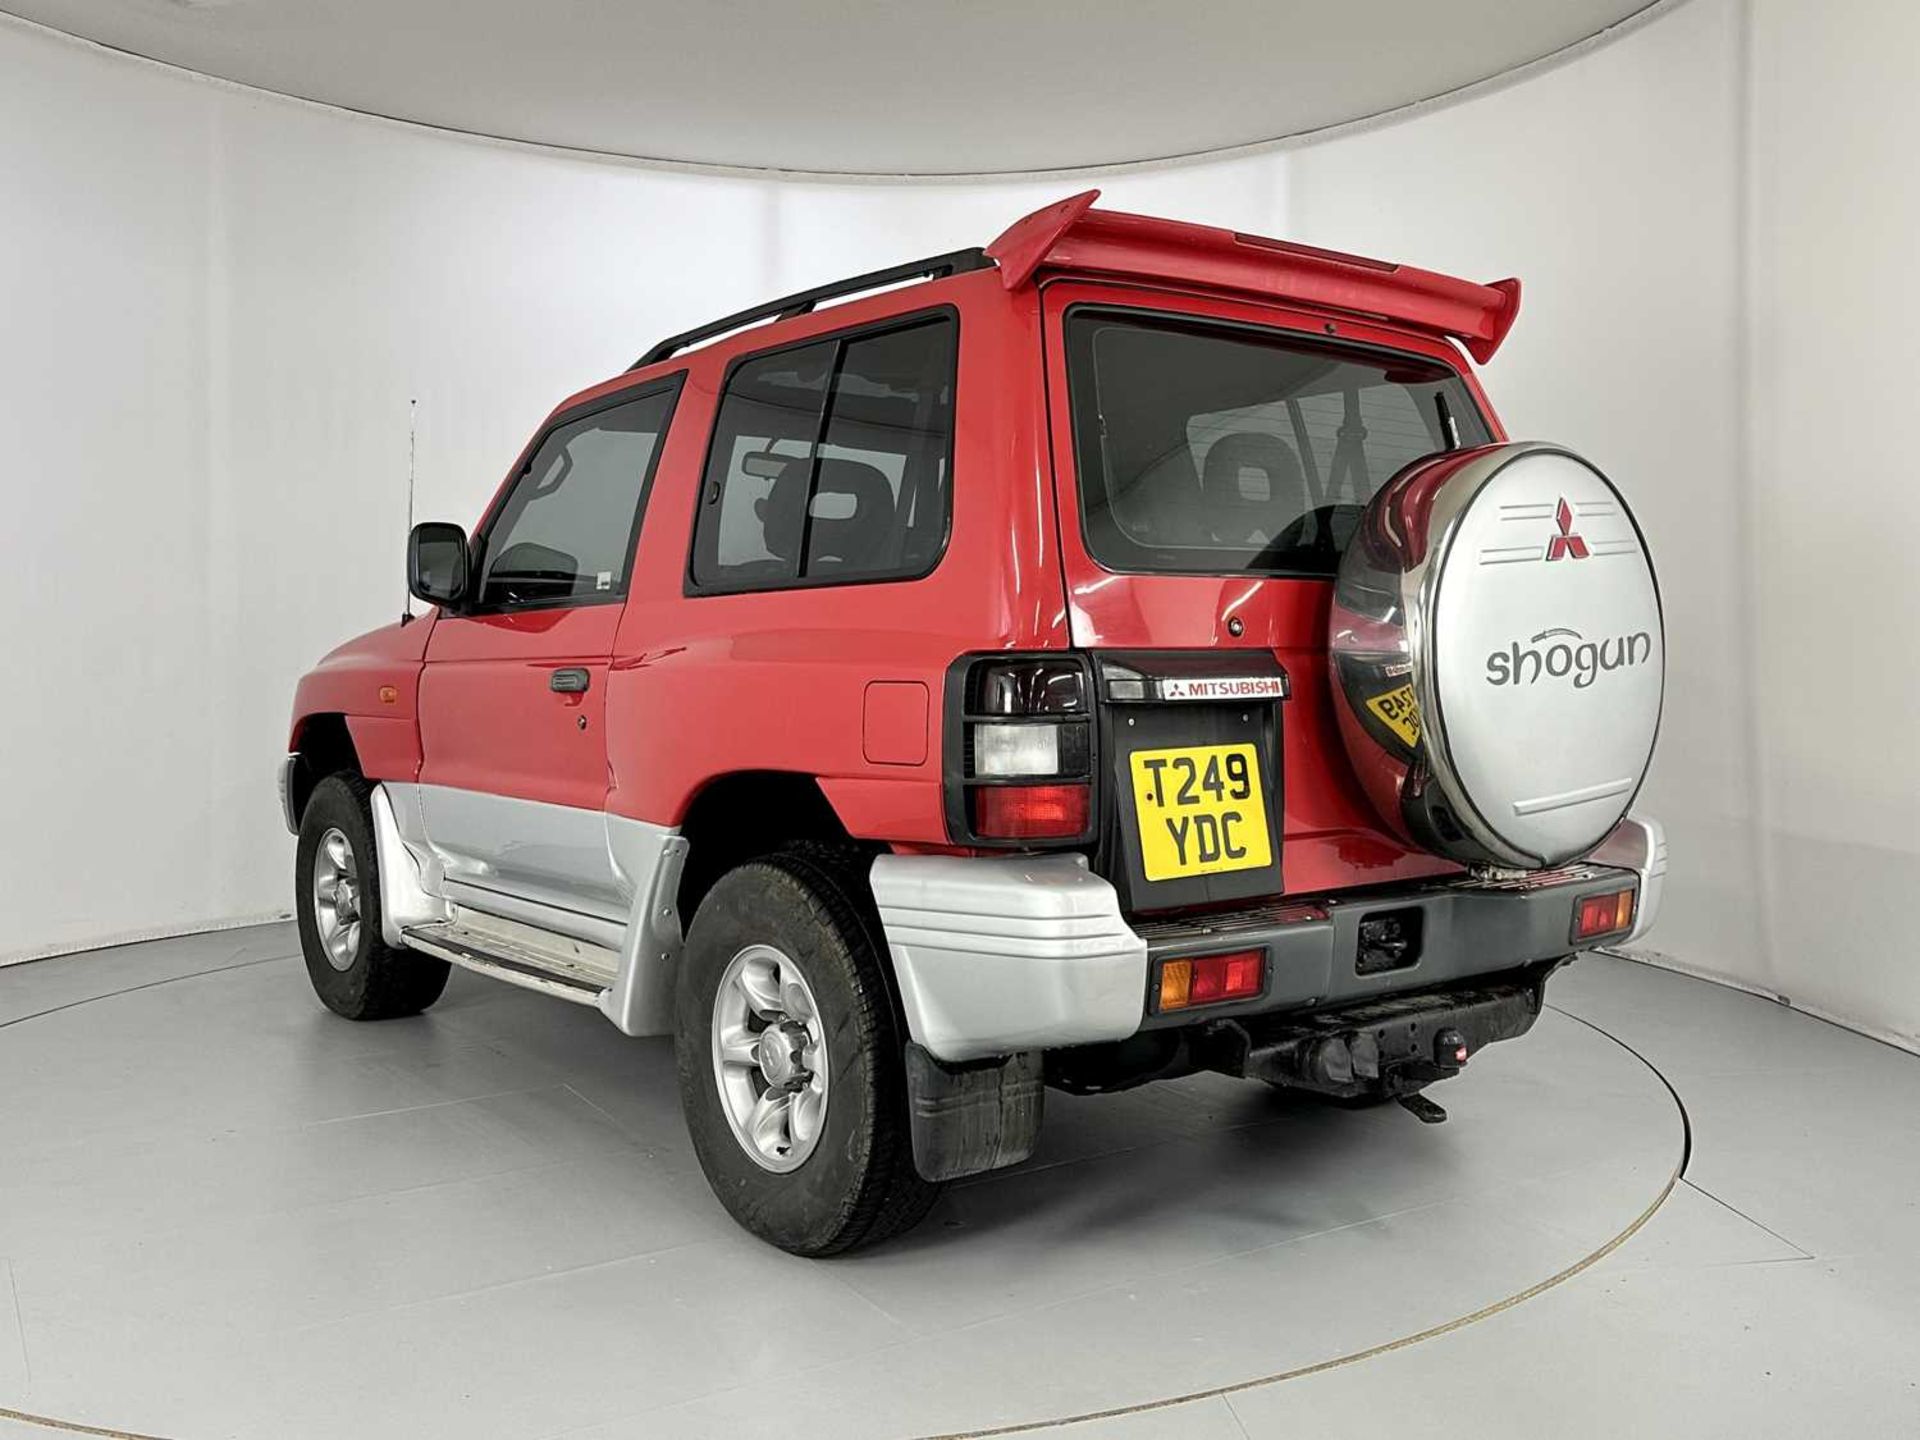 1999 Mitsubishi Shogun - Image 7 of 28